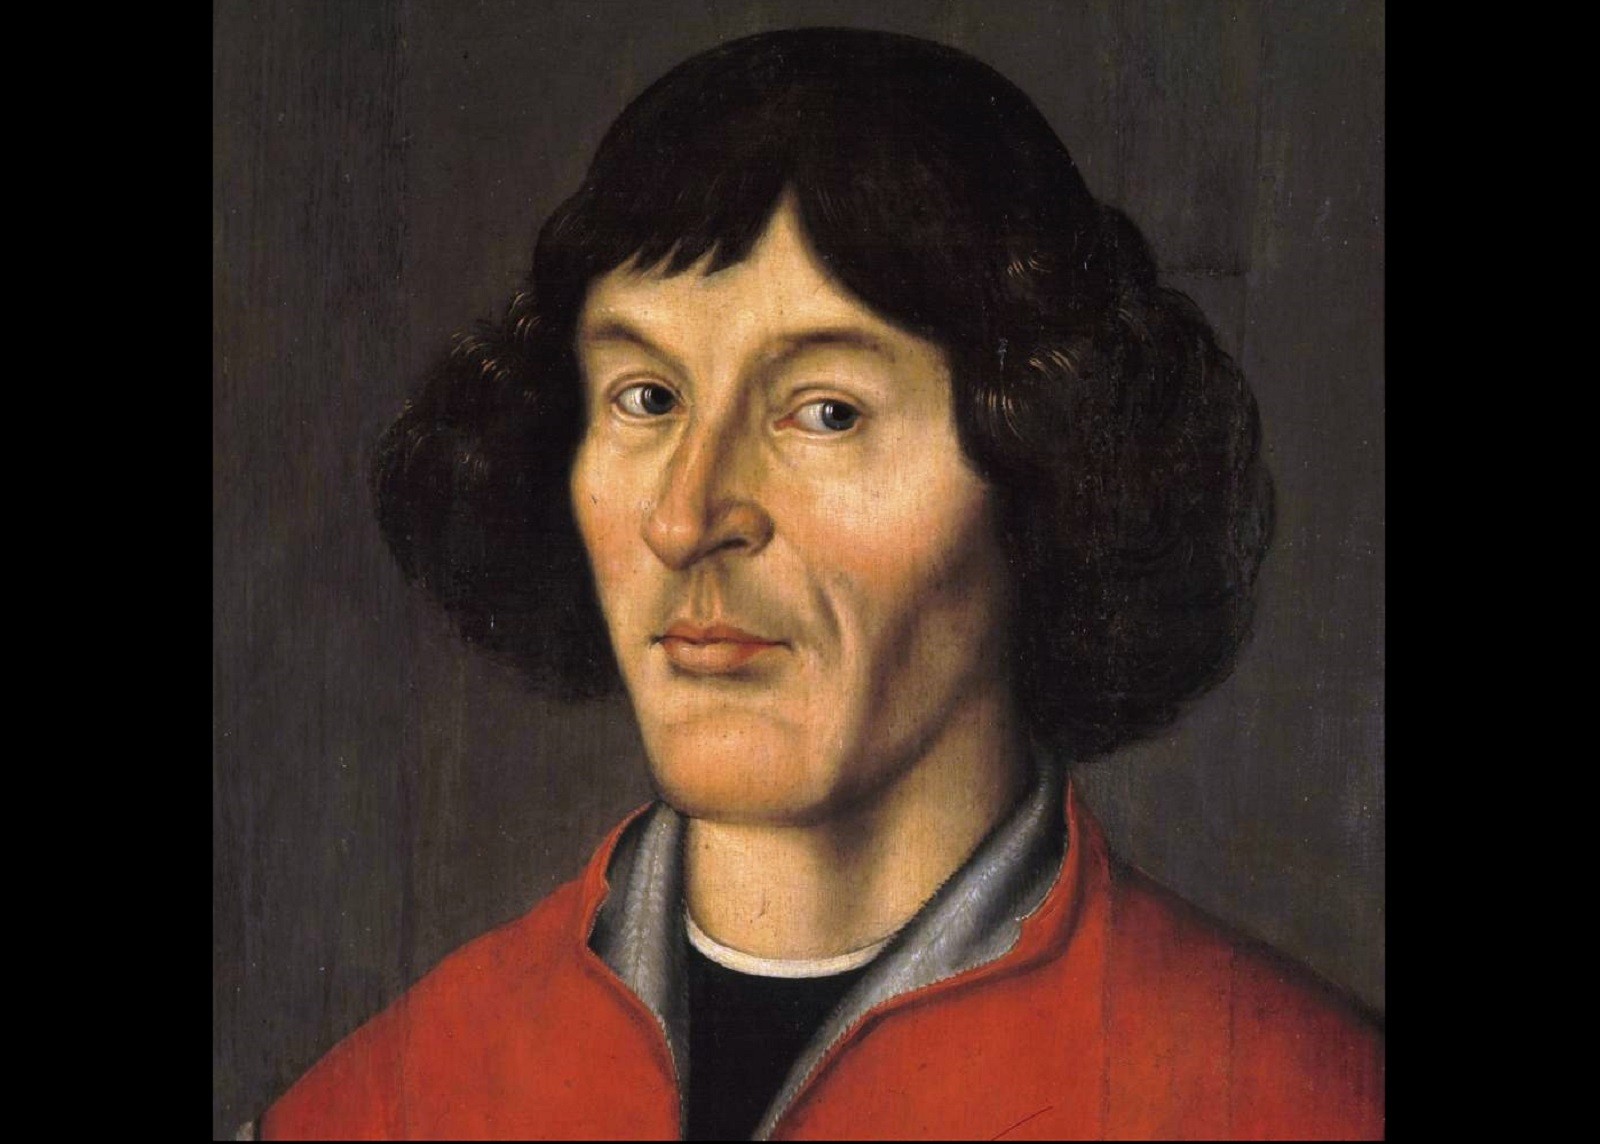 Z Kopernikiem wiąże się pewna zagadka. Niewyjaśniona historia jednego z najsłynniejszych Polaków w historii